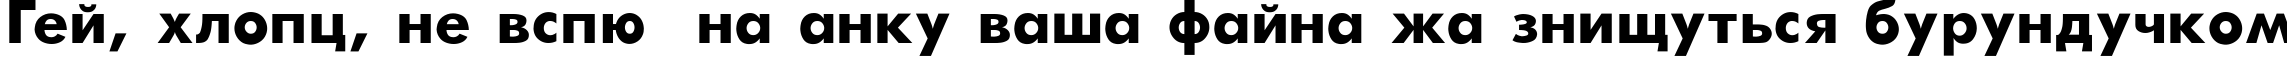 Пример написания шрифтом Futura-Bold текста на украинском